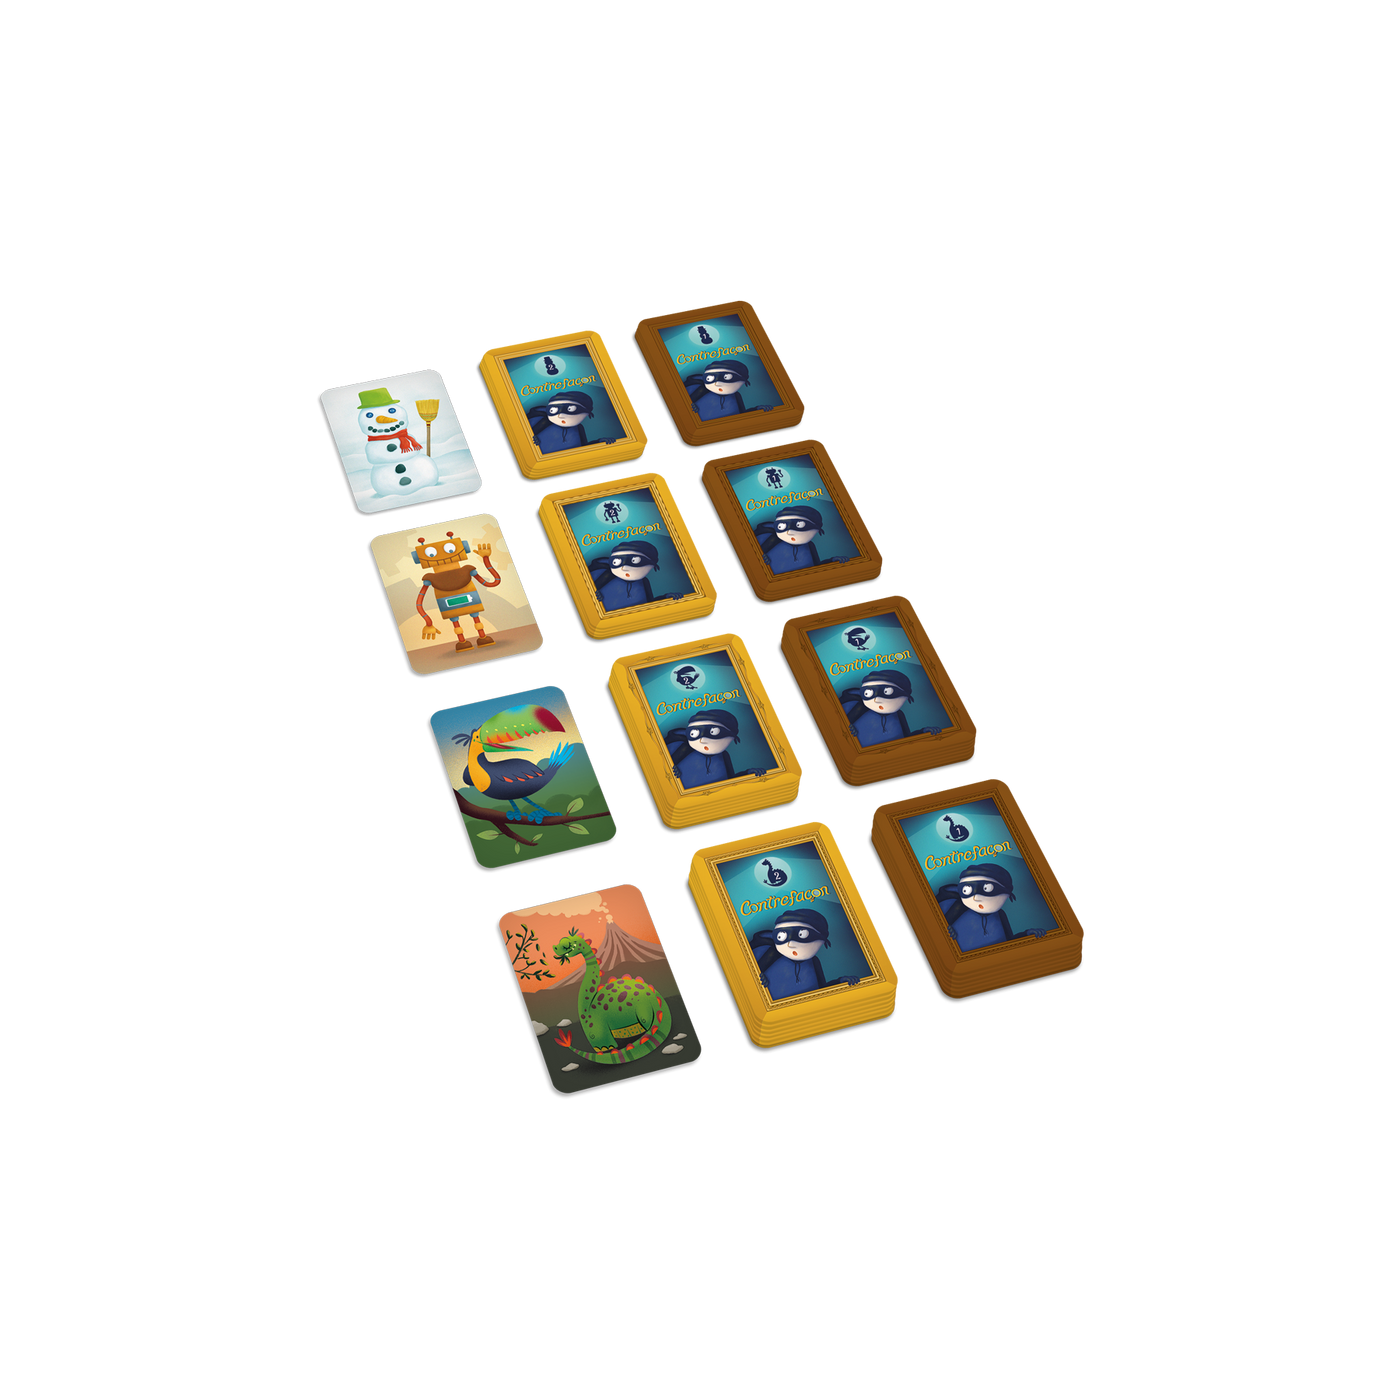 Contrefaçon – Composantes du jeu : piles de cartes placées par niveau (bonhomme de neige, robot, toucan, dinosaure)